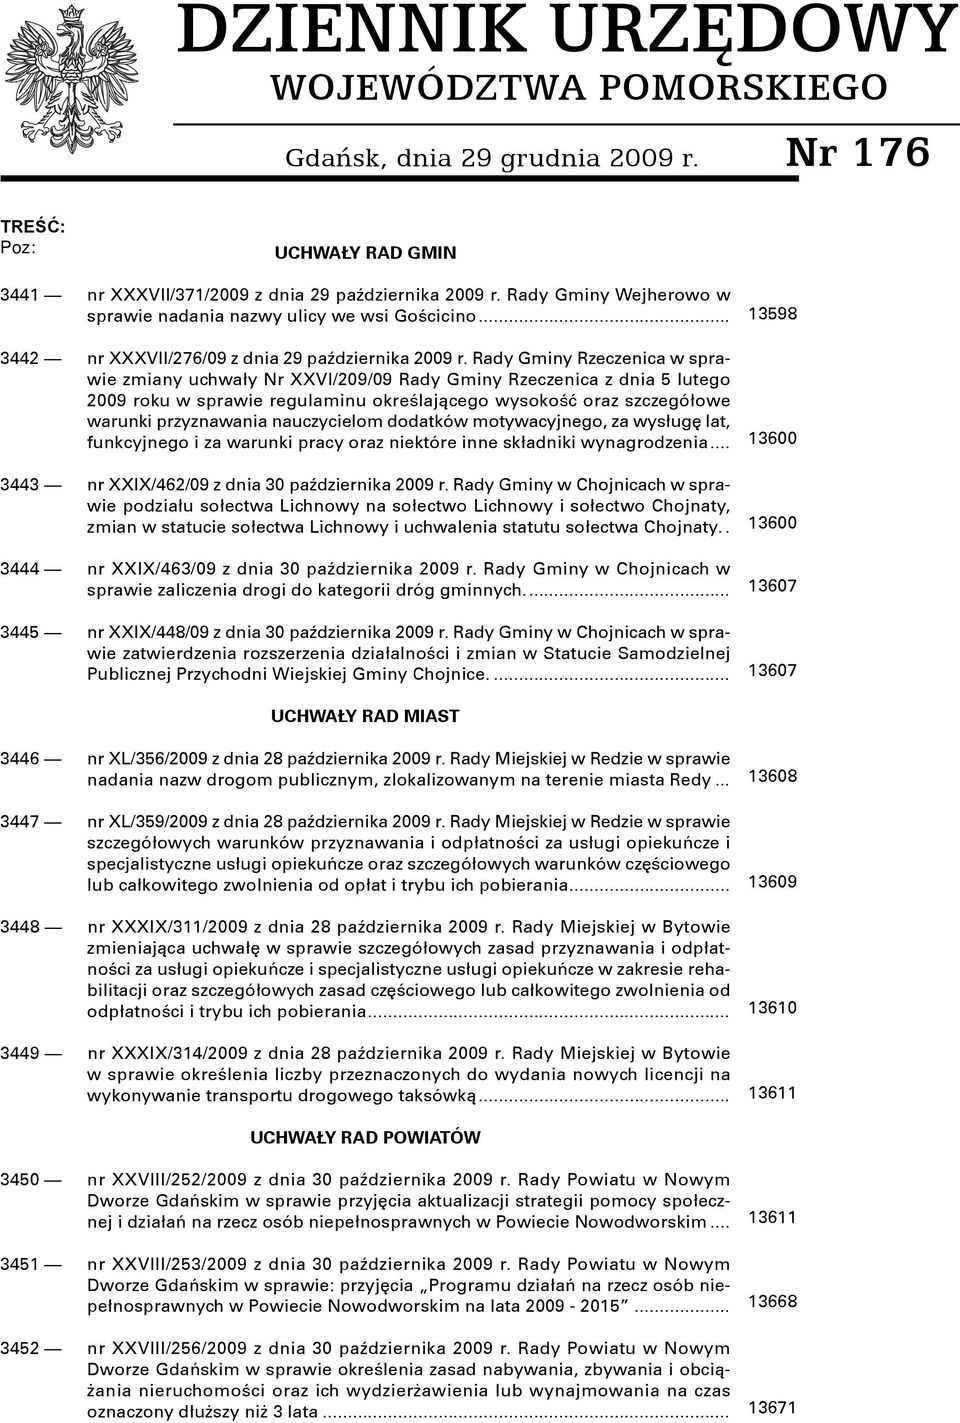 Rady Gminy Rzeczenica w sprawie zmiany uchwały Nr XXVI/209/09 Rady Gminy Rzeczenica z dnia 5 lutego 2009 roku w sprawie regulaminu określającego wysokość oraz szczegółowe warunki przyznawania